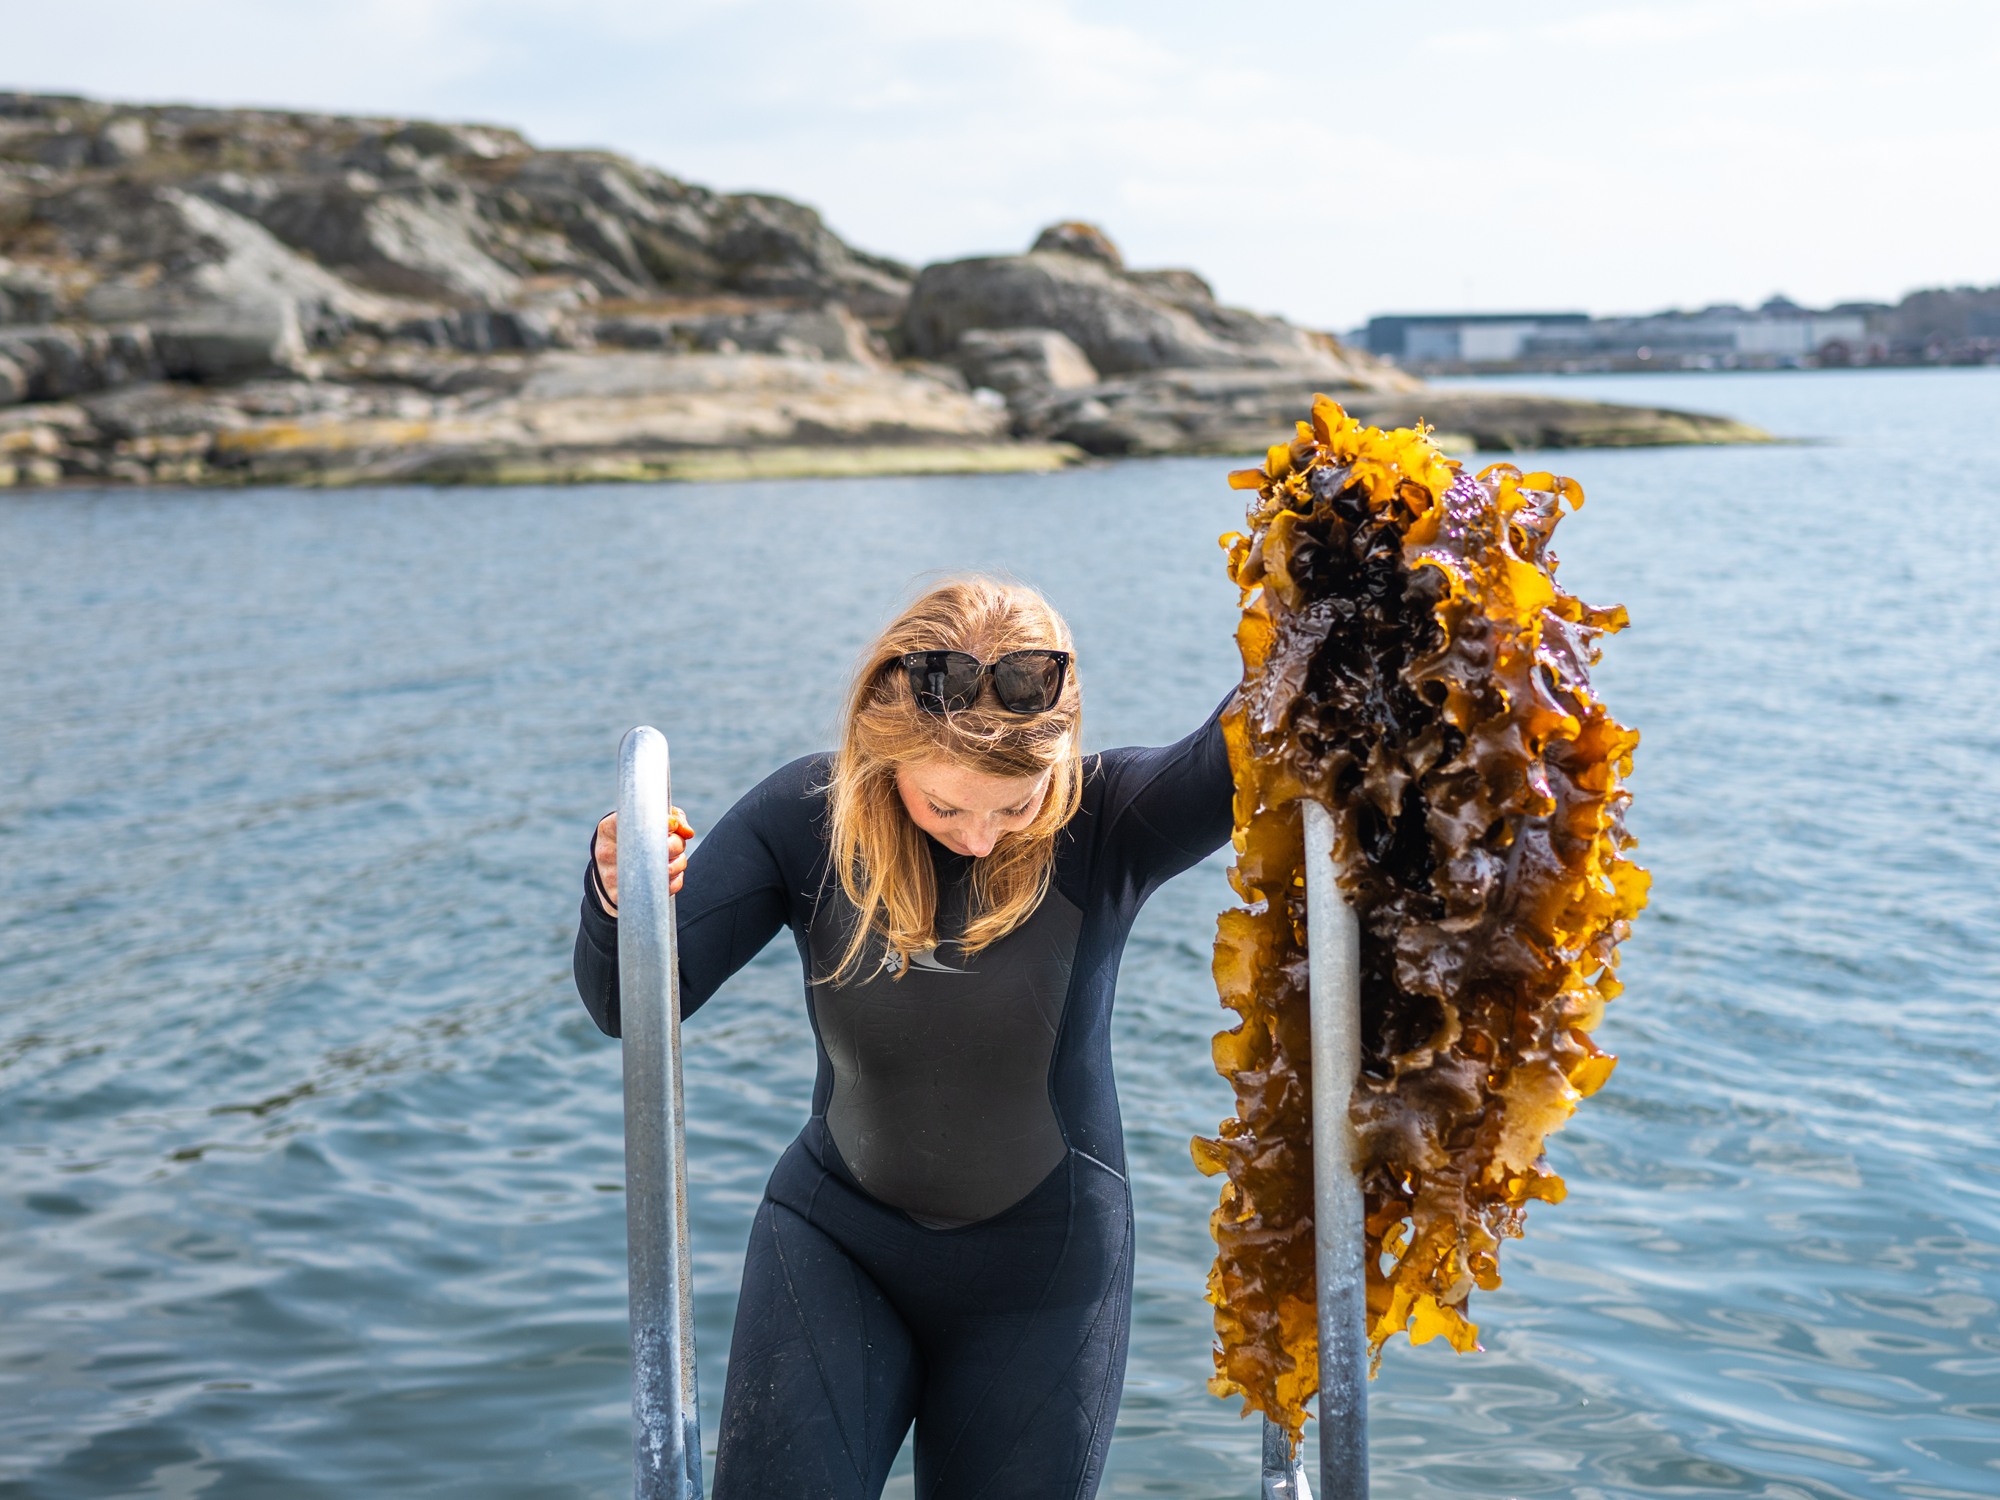 Sugar kelp farming in the Gothenburg archipelago.